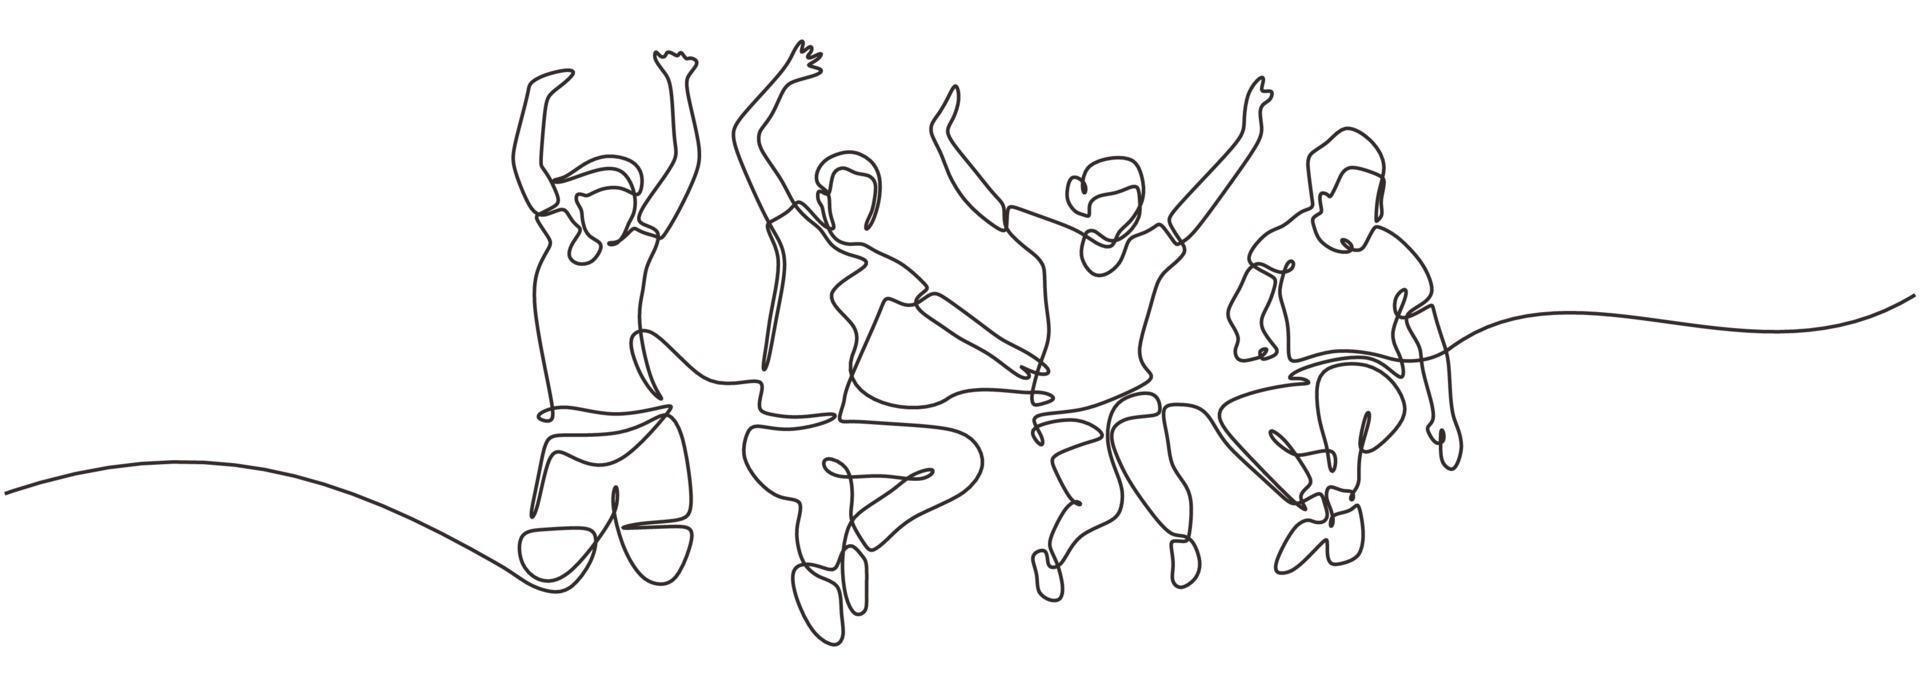 Gruppe von Menschen springen sieht glücklich aus und genießt ihr Leben vektor